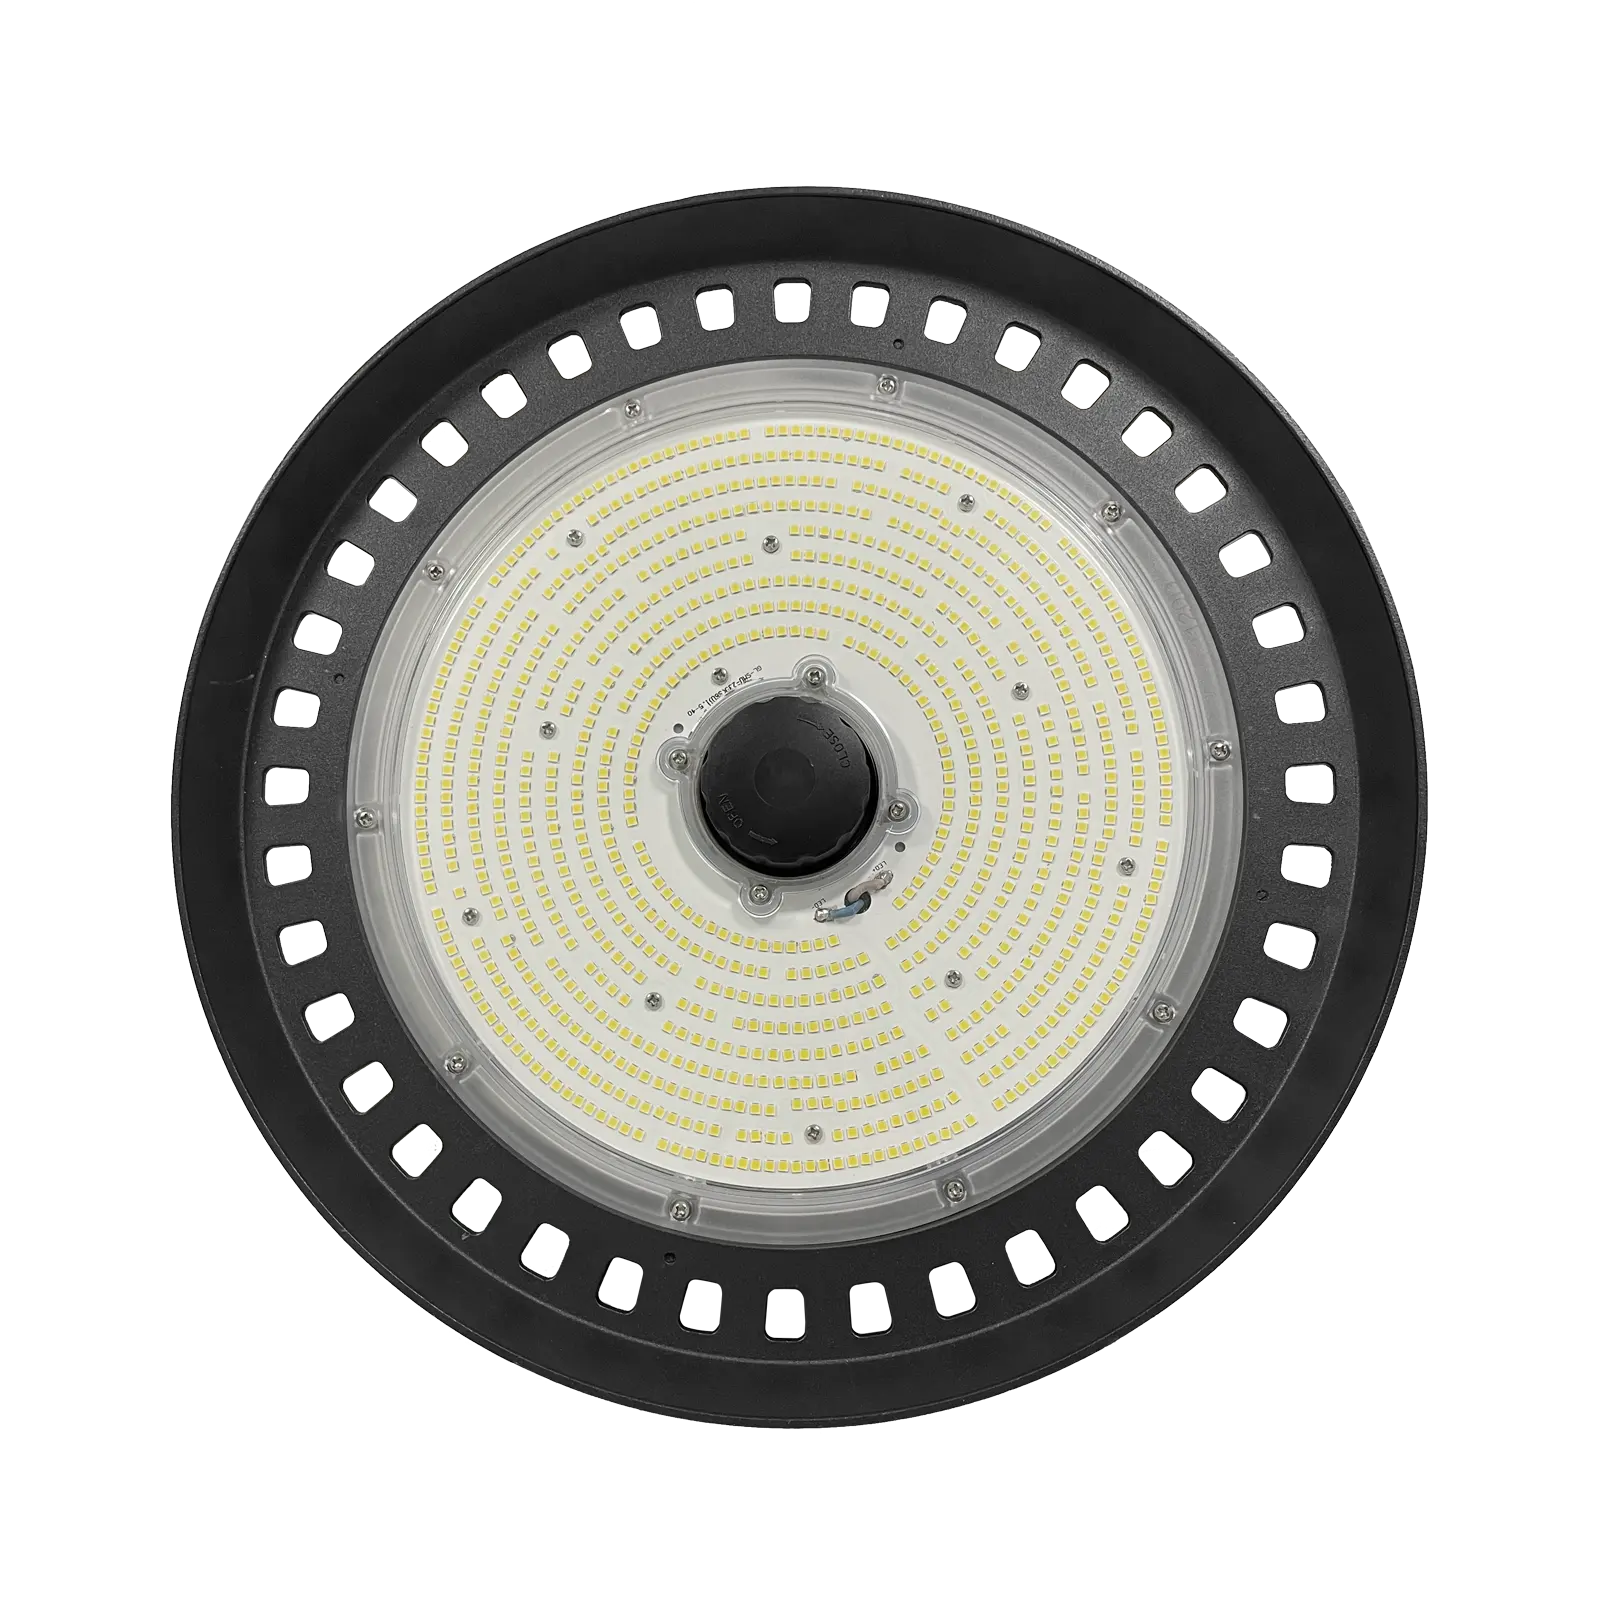 ไฟ LED ไฮเบย์สำหรับอุตสาหกรรม100W 150W 200W 240W สีดำส่องสว่างโคมไฟที่เก็บพลังงาน OEM เครื่องหมาย EVO